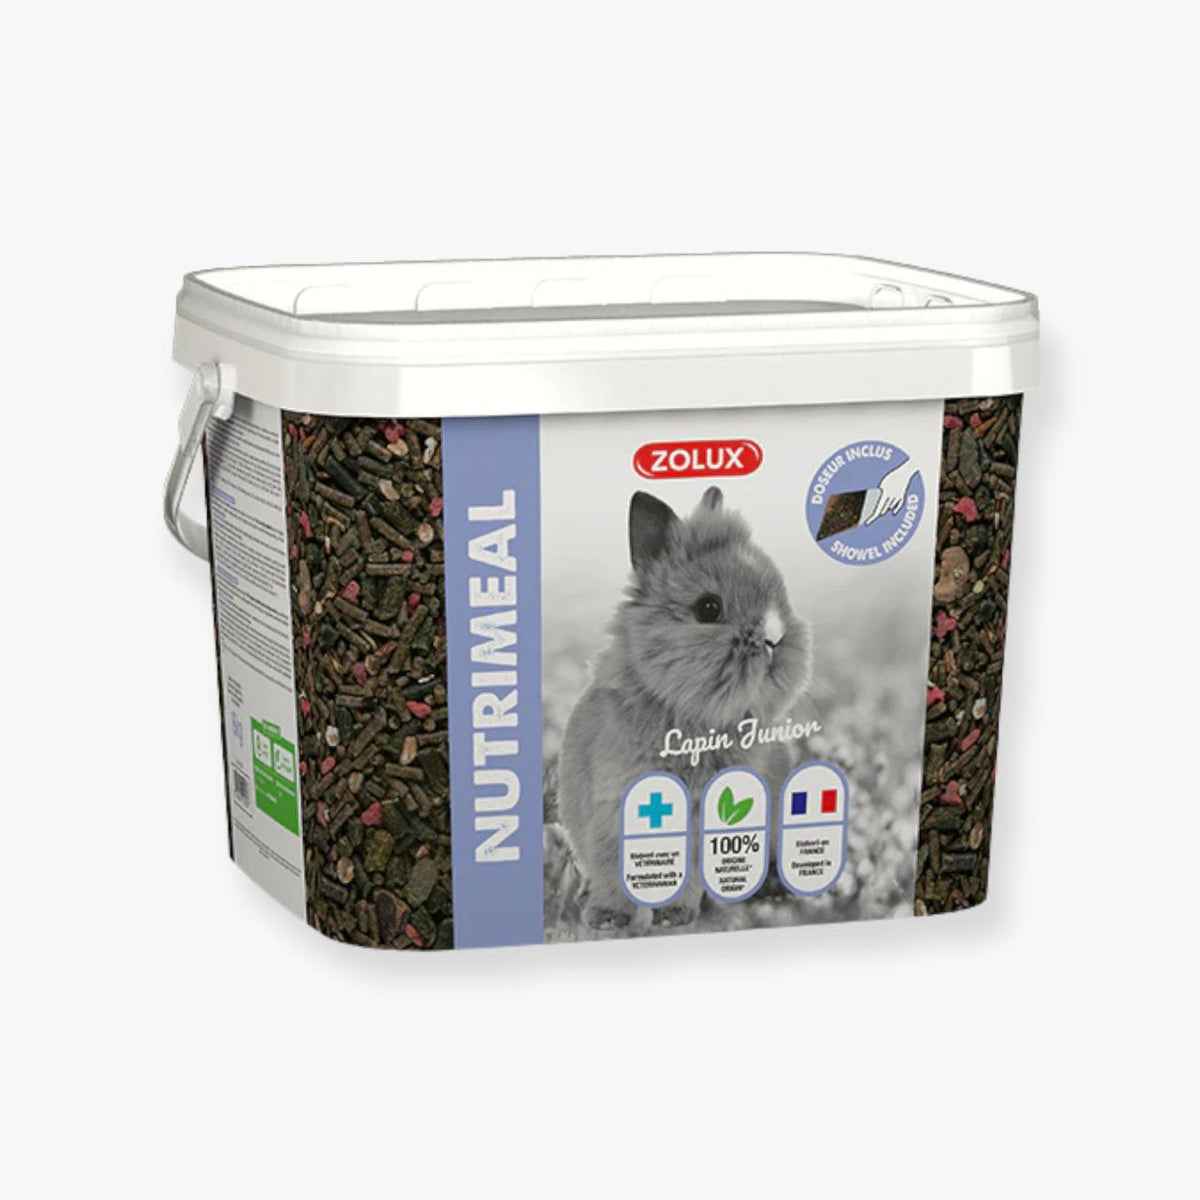 زولكس نوتر طعام مركب للأرانب القزمية الصغيرة حتى سن 6 أشهر 6 كغ - PetPark | بيت بارك